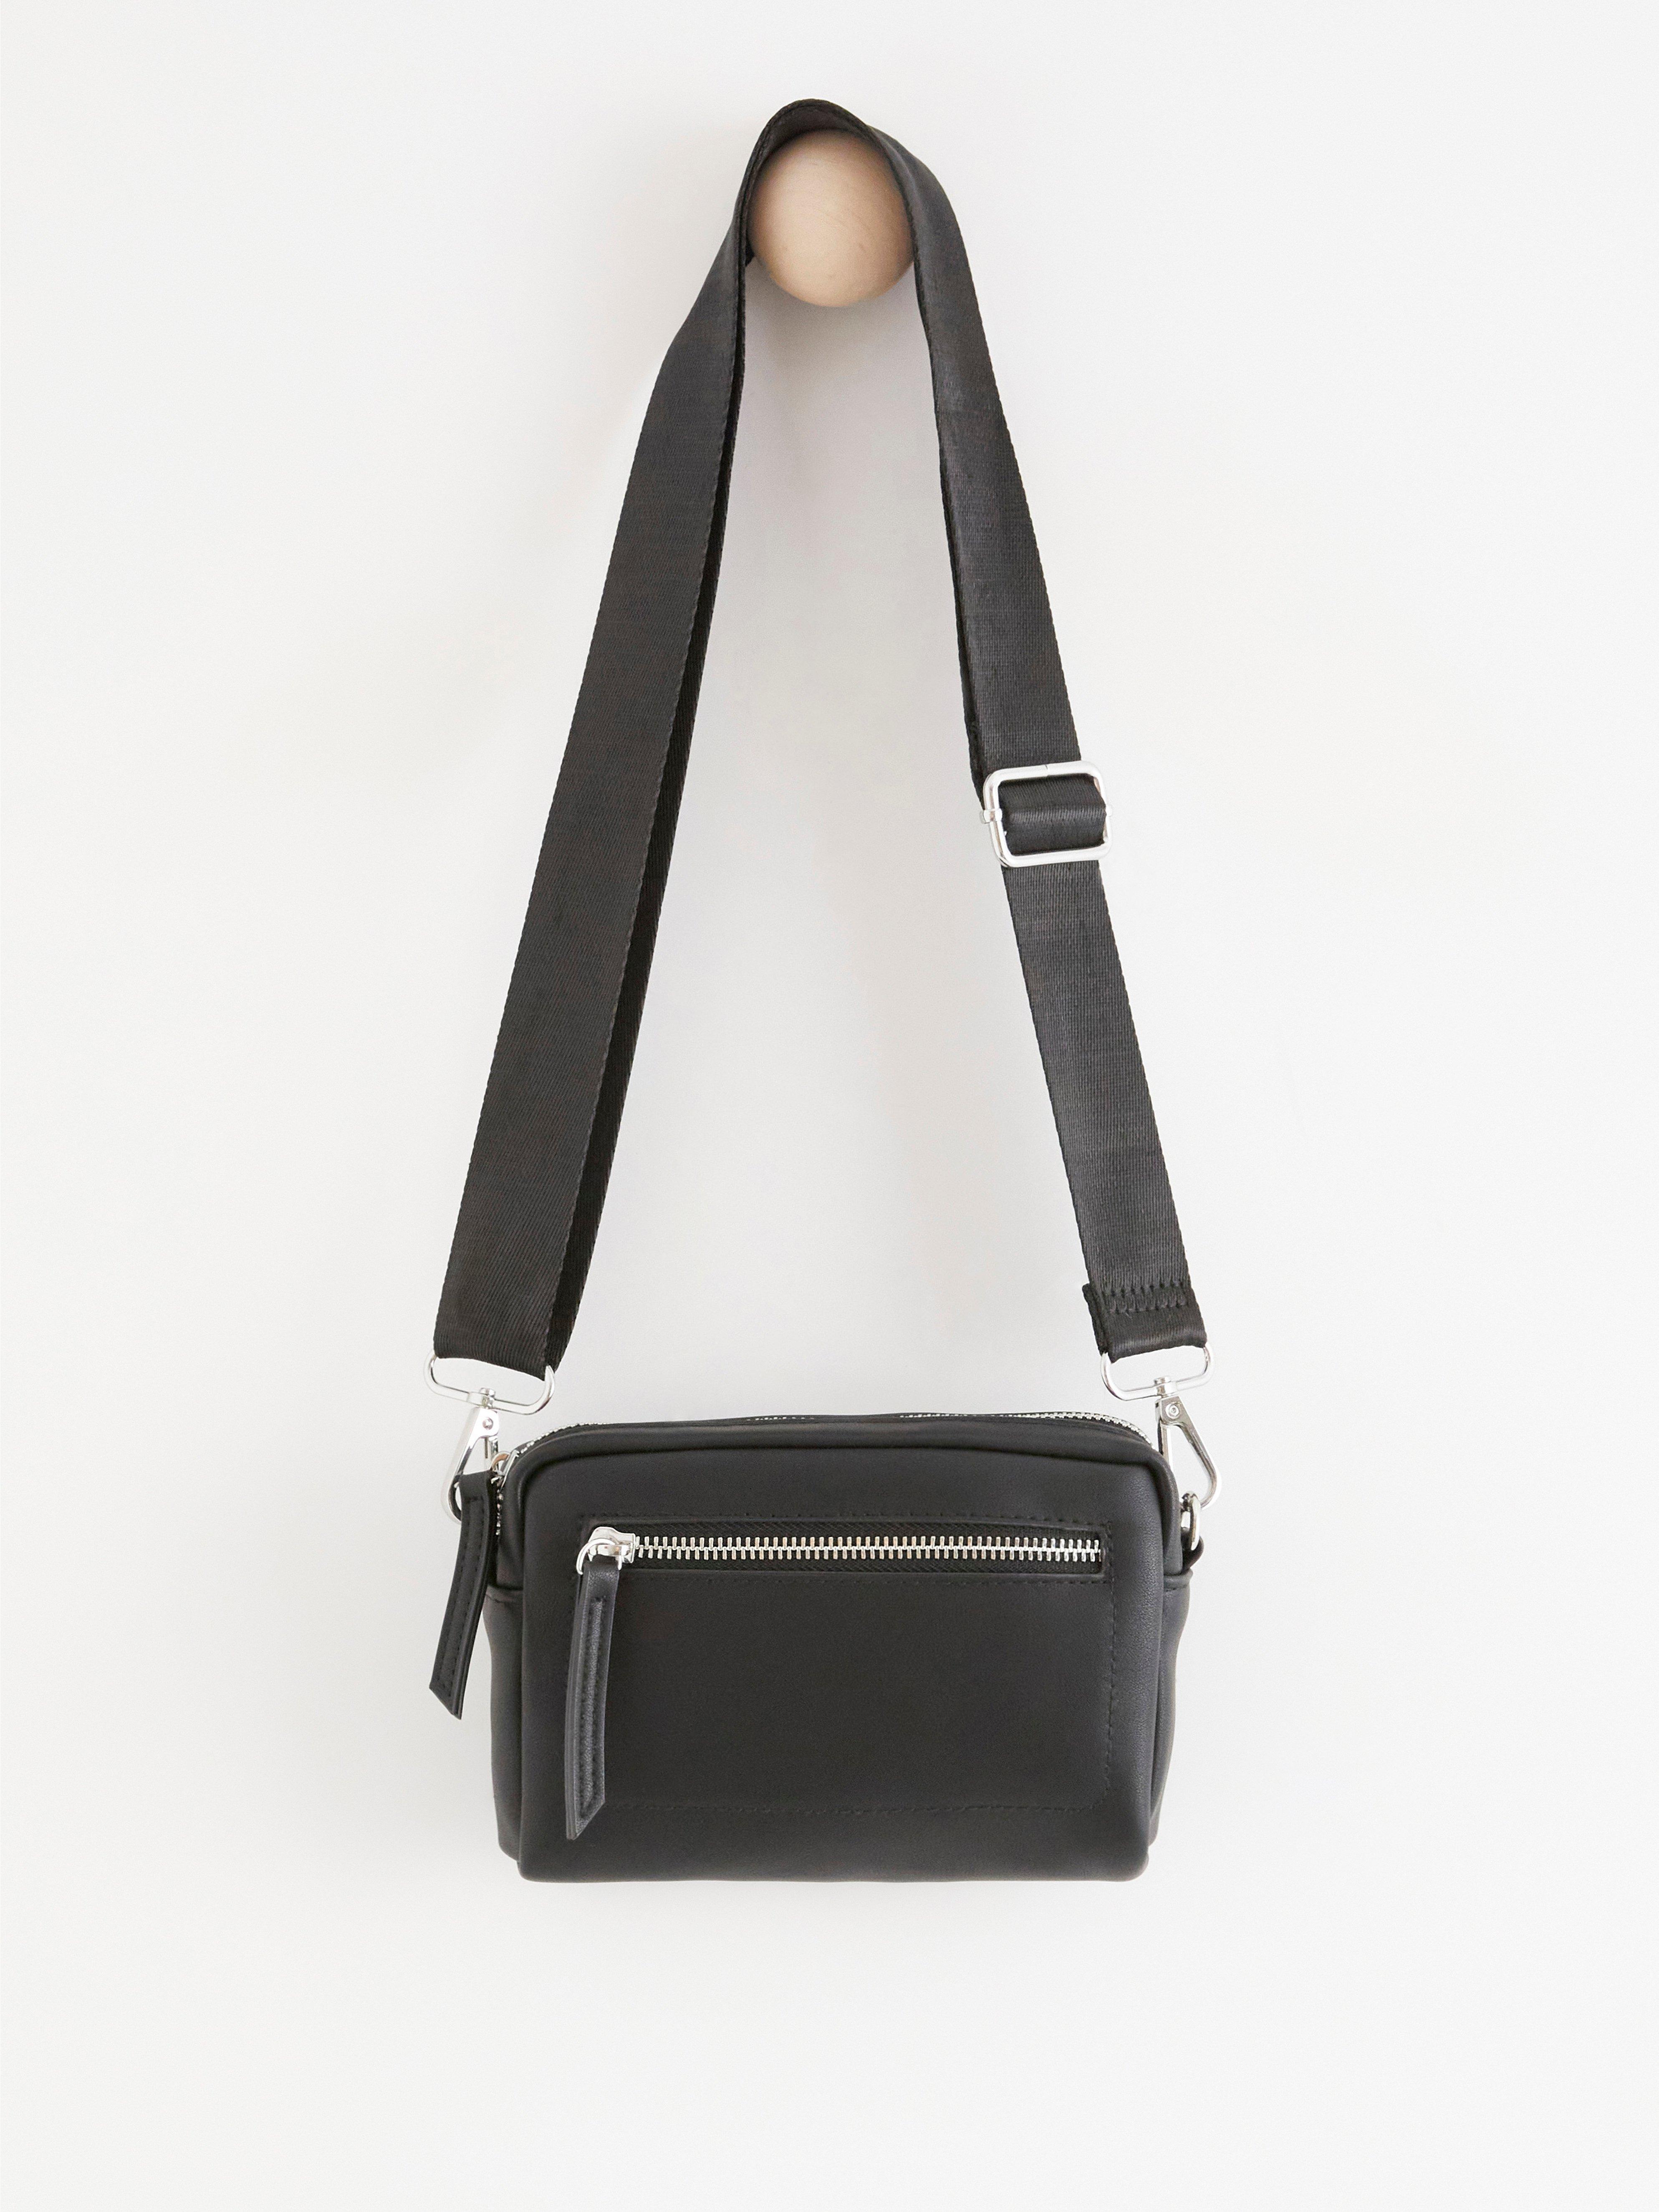 Shoulder bag with wide strap